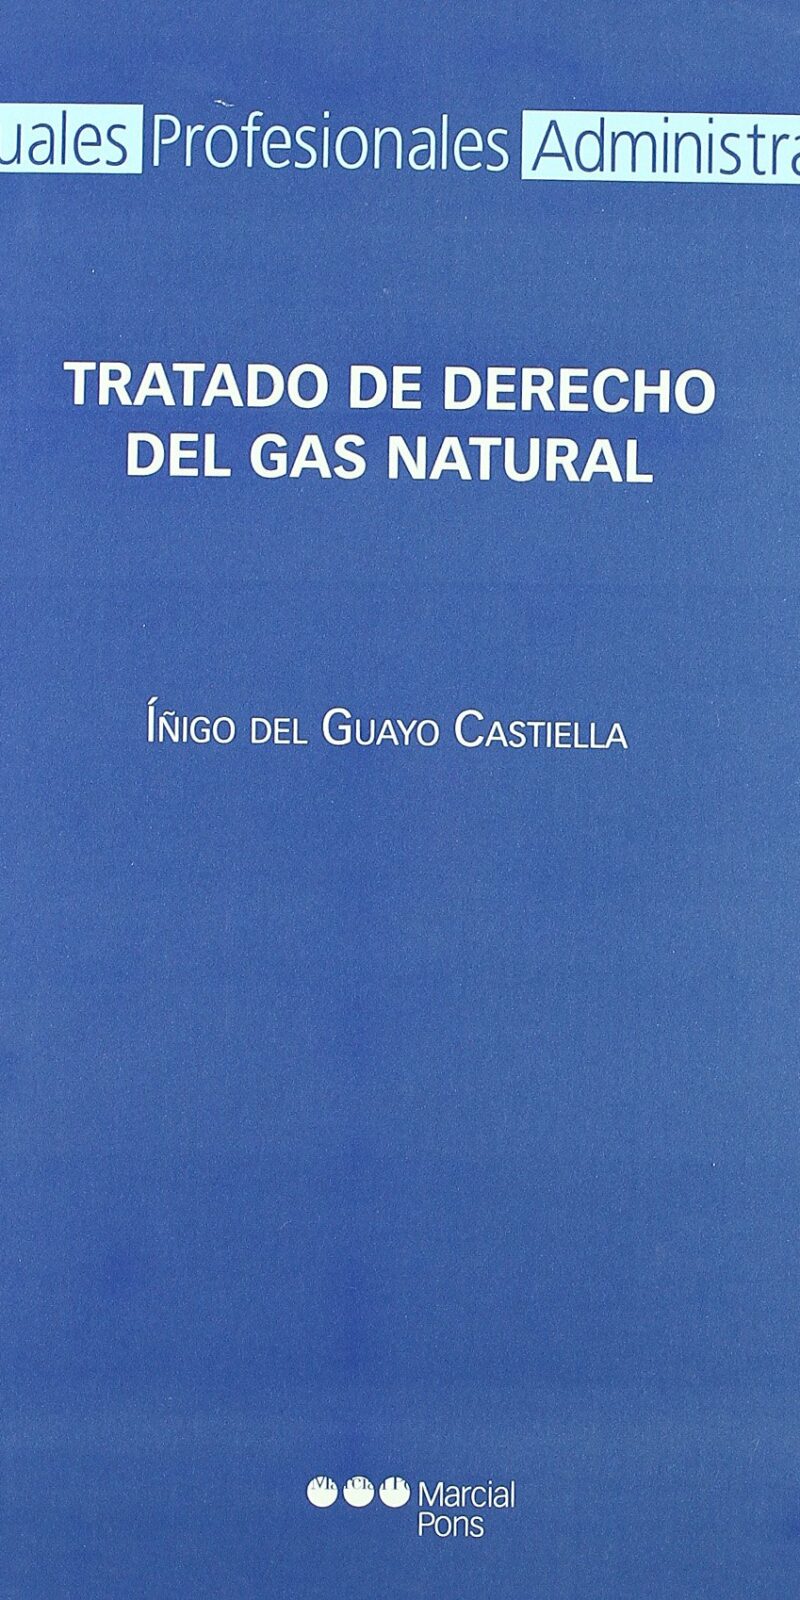 TRATADO DERECHO GAS NATURAL